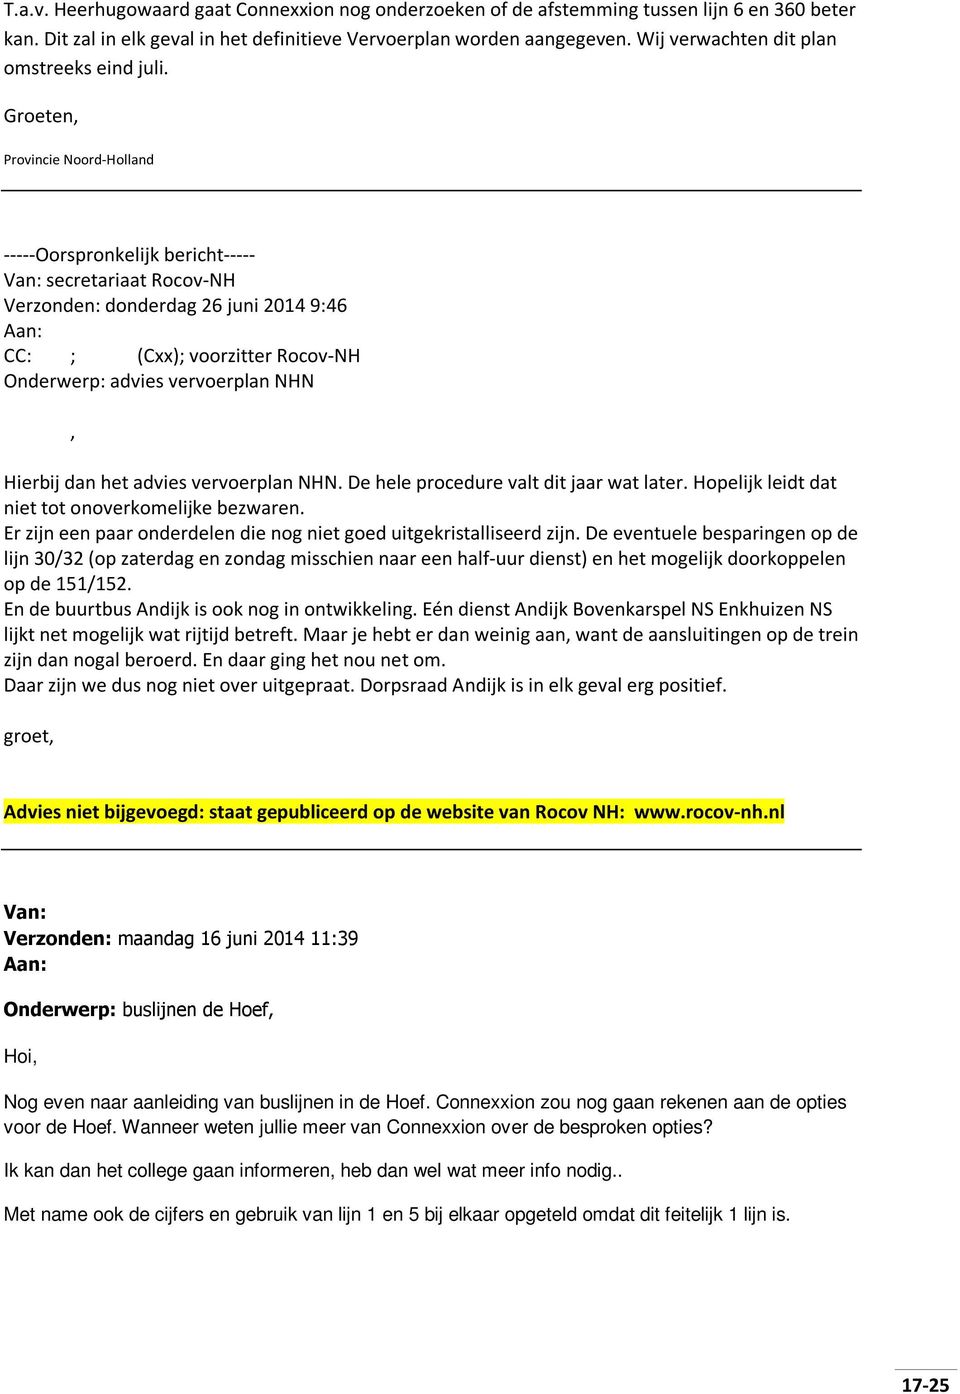 Groeten, Provincie Noord-Holland -----Oorspronkelijk bericht----- Van: secretariaat Rocov-NH Verzonden: donderdag 26 juni 2014 9:46 Aan: CC: ; (Cxx); voorzitter Rocov-NH Onderwerp: advies vervoerplan